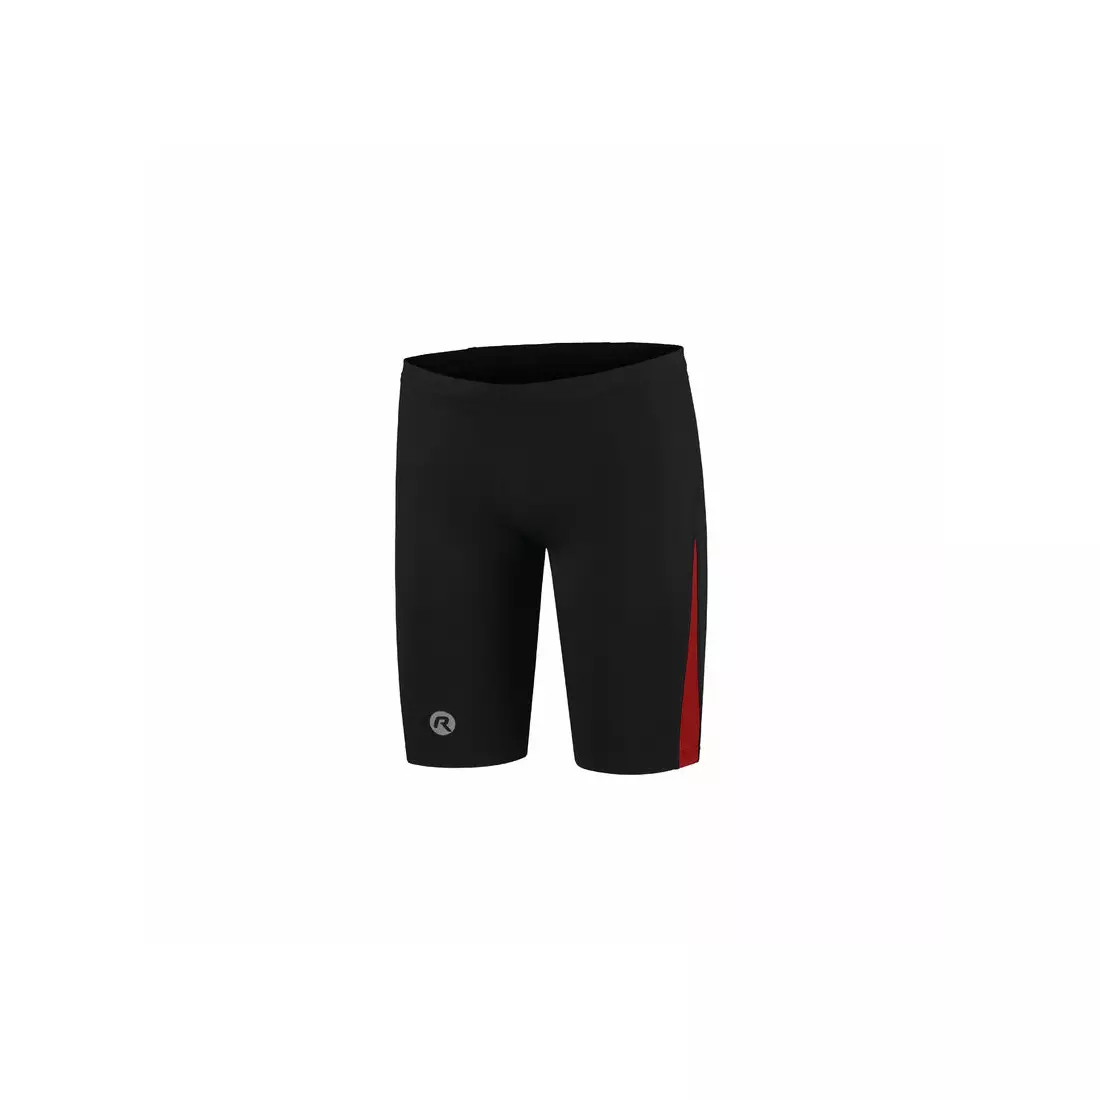 ROGELLI  RUN DIXON - pánske športové šortky, čierne a červené